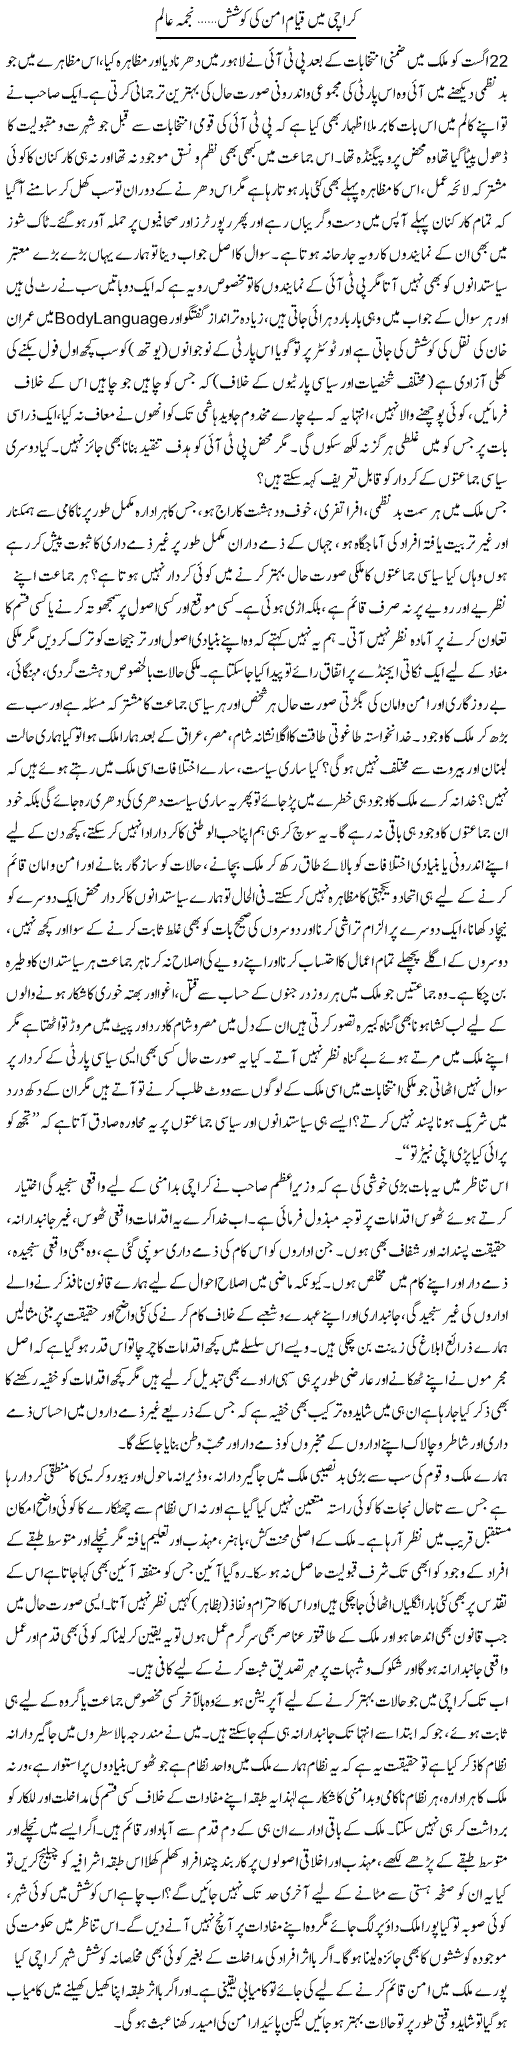 Karachi Mai Qayam e Aman Ki Koshish | Najma Alam | Daily Urdu Columns